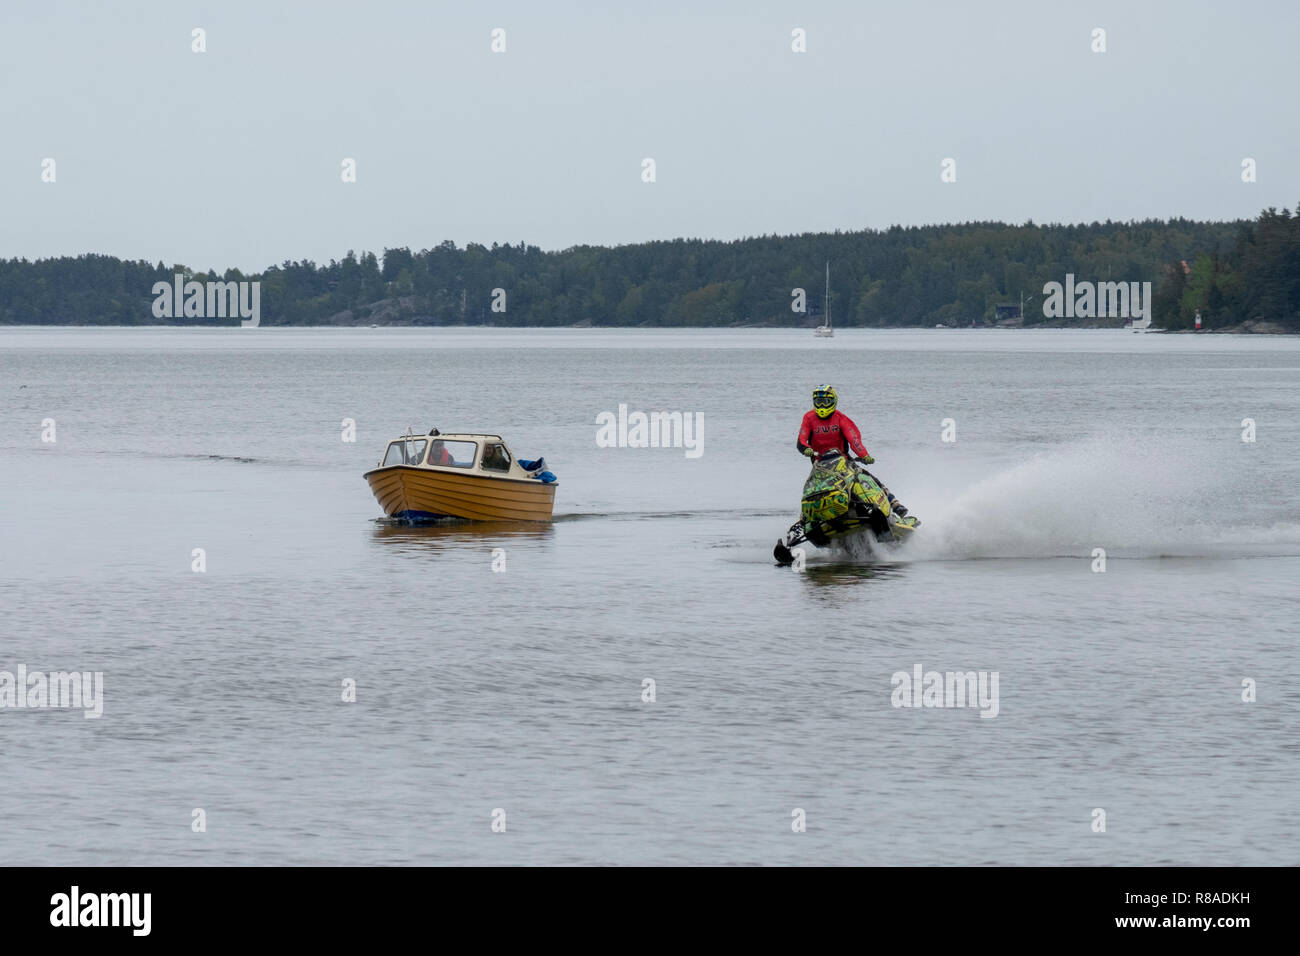 Barco de ocio y una motonieve competir en agua, Norrtälje, Suecia. Foto de stock